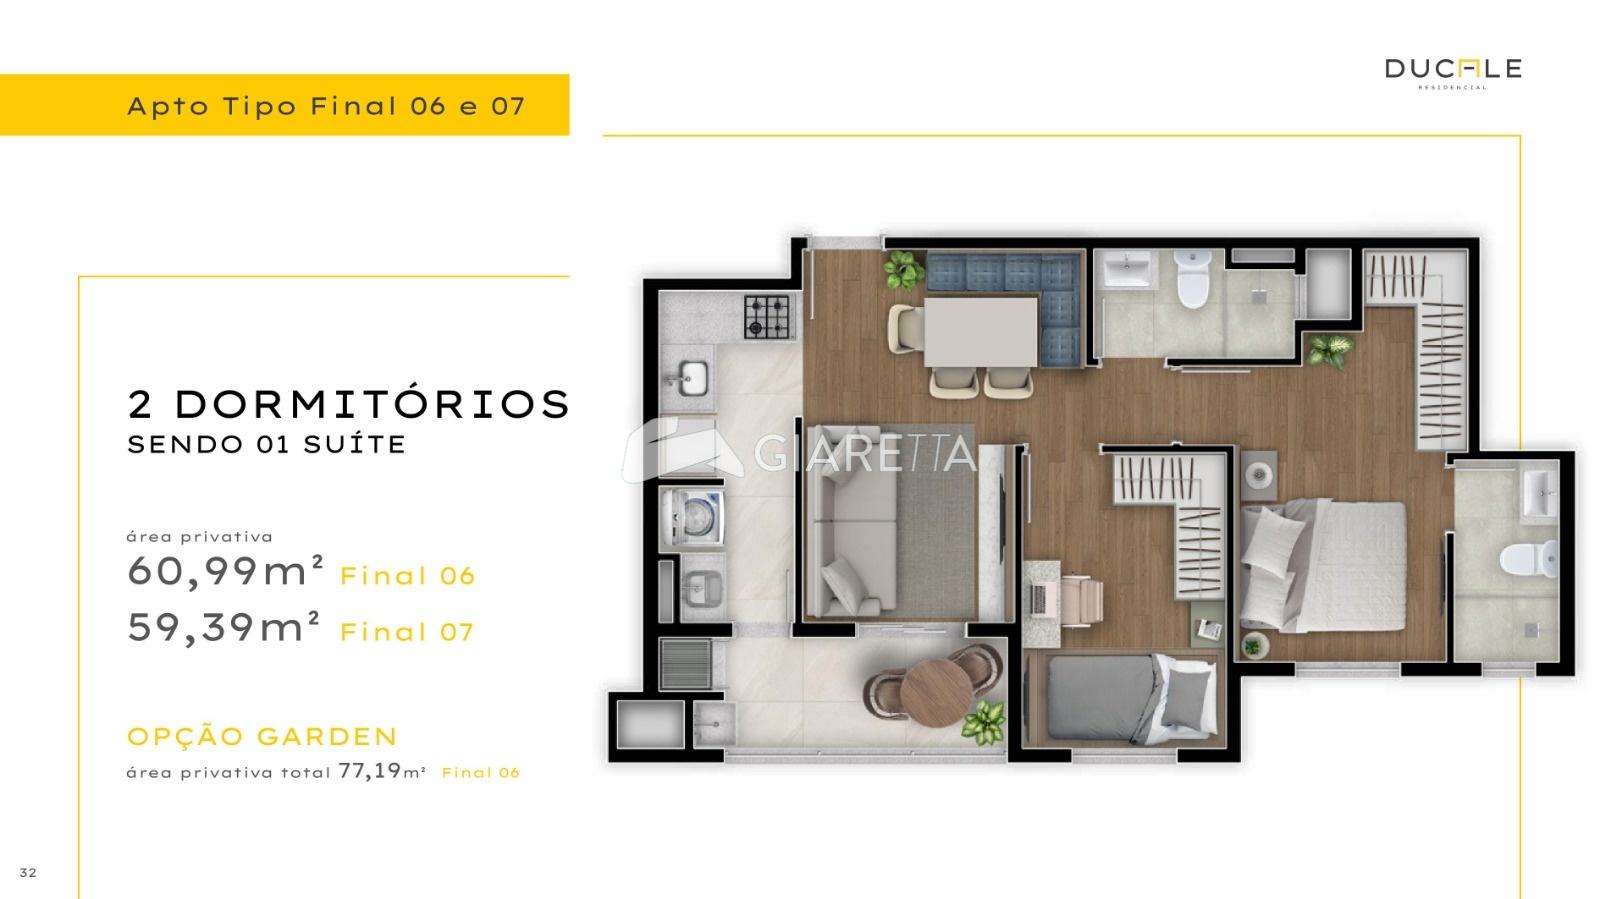 Apartamento, 1 quarto, 60 m² - Foto 1